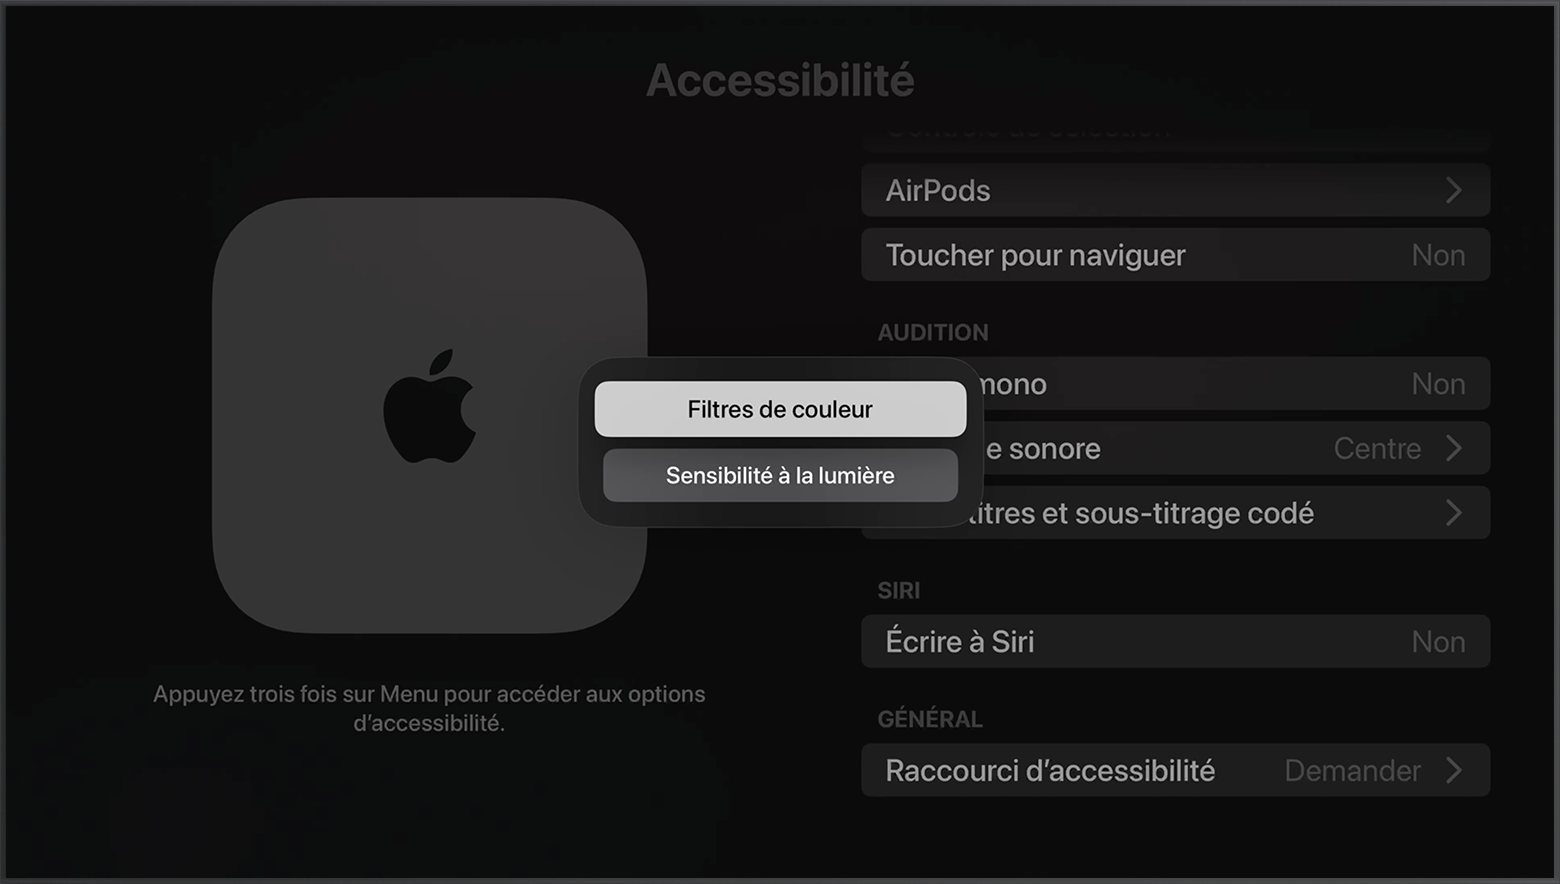 Les options de raccourci Filtres de couleur et Sensibilité à la lumière sont affichées sur l’écran Accessibilité